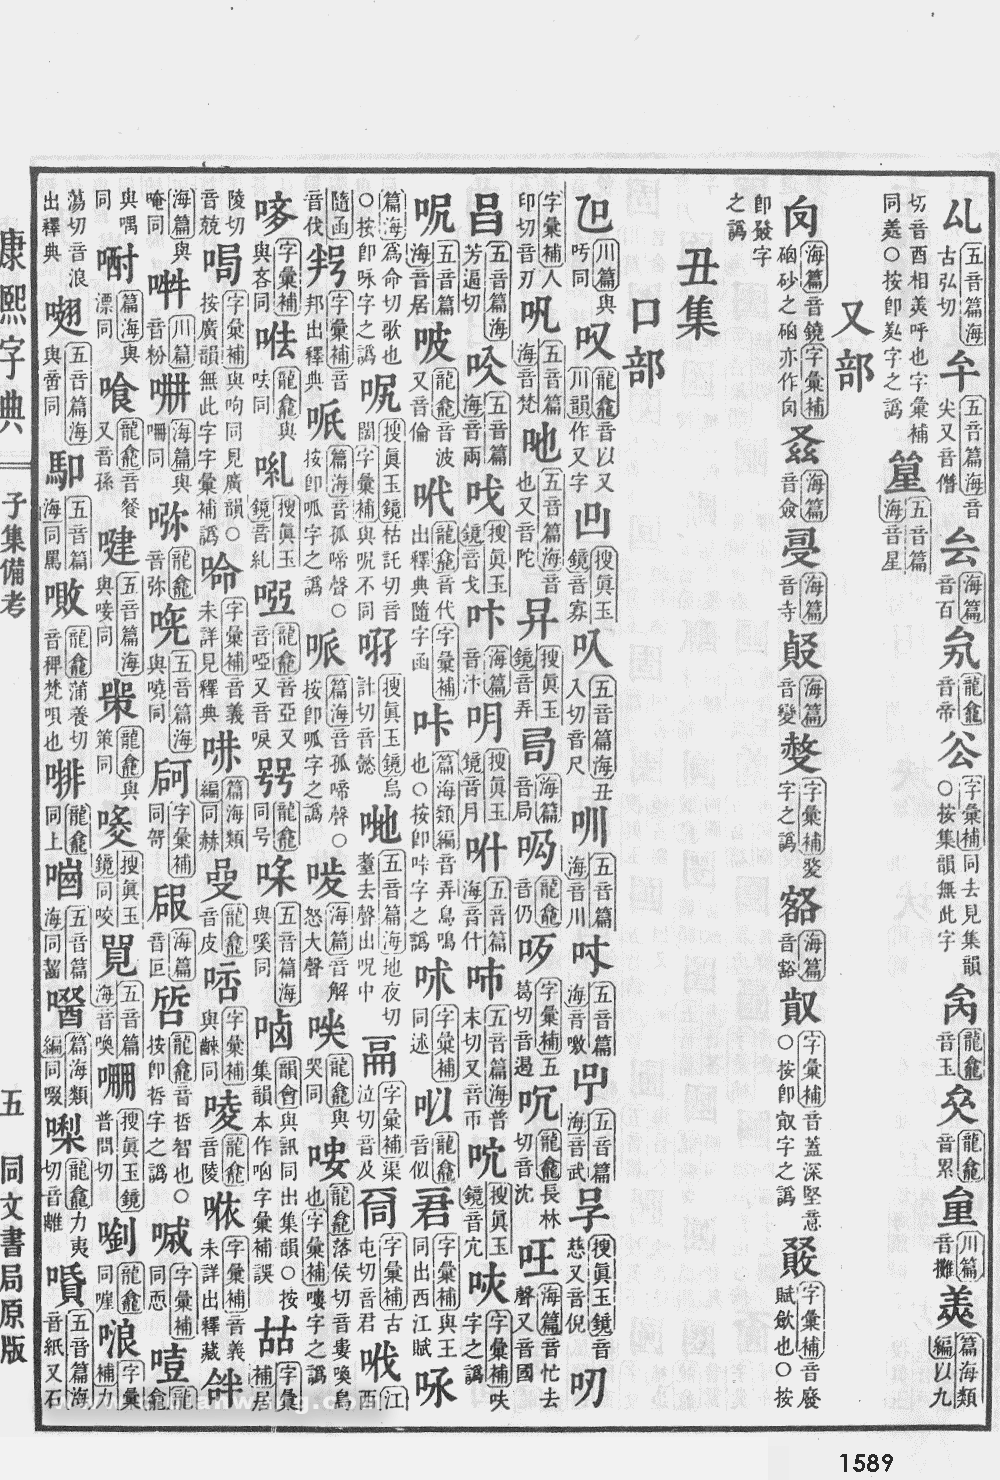 康熙字典掃描版第1589頁